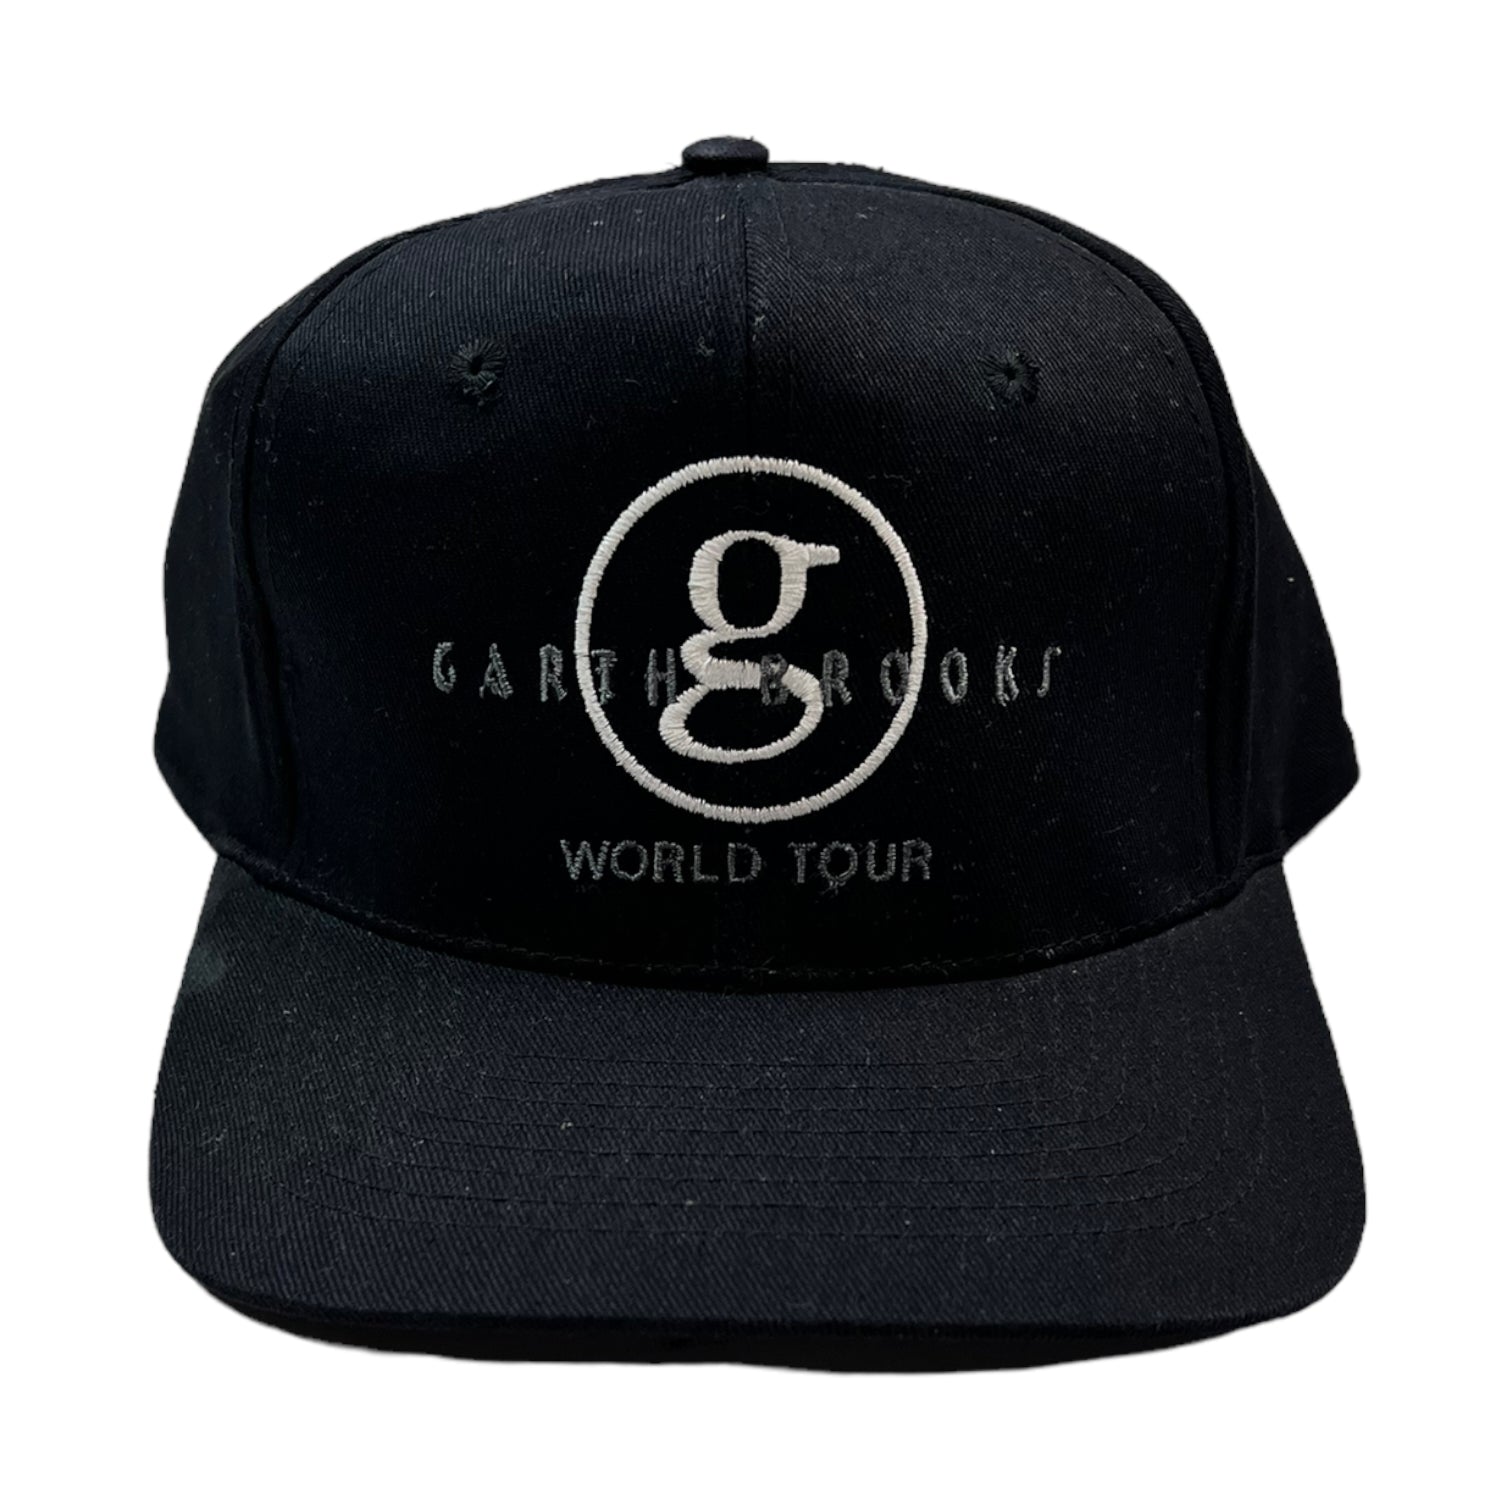 Vintage Garth Brooks World Tour Hat